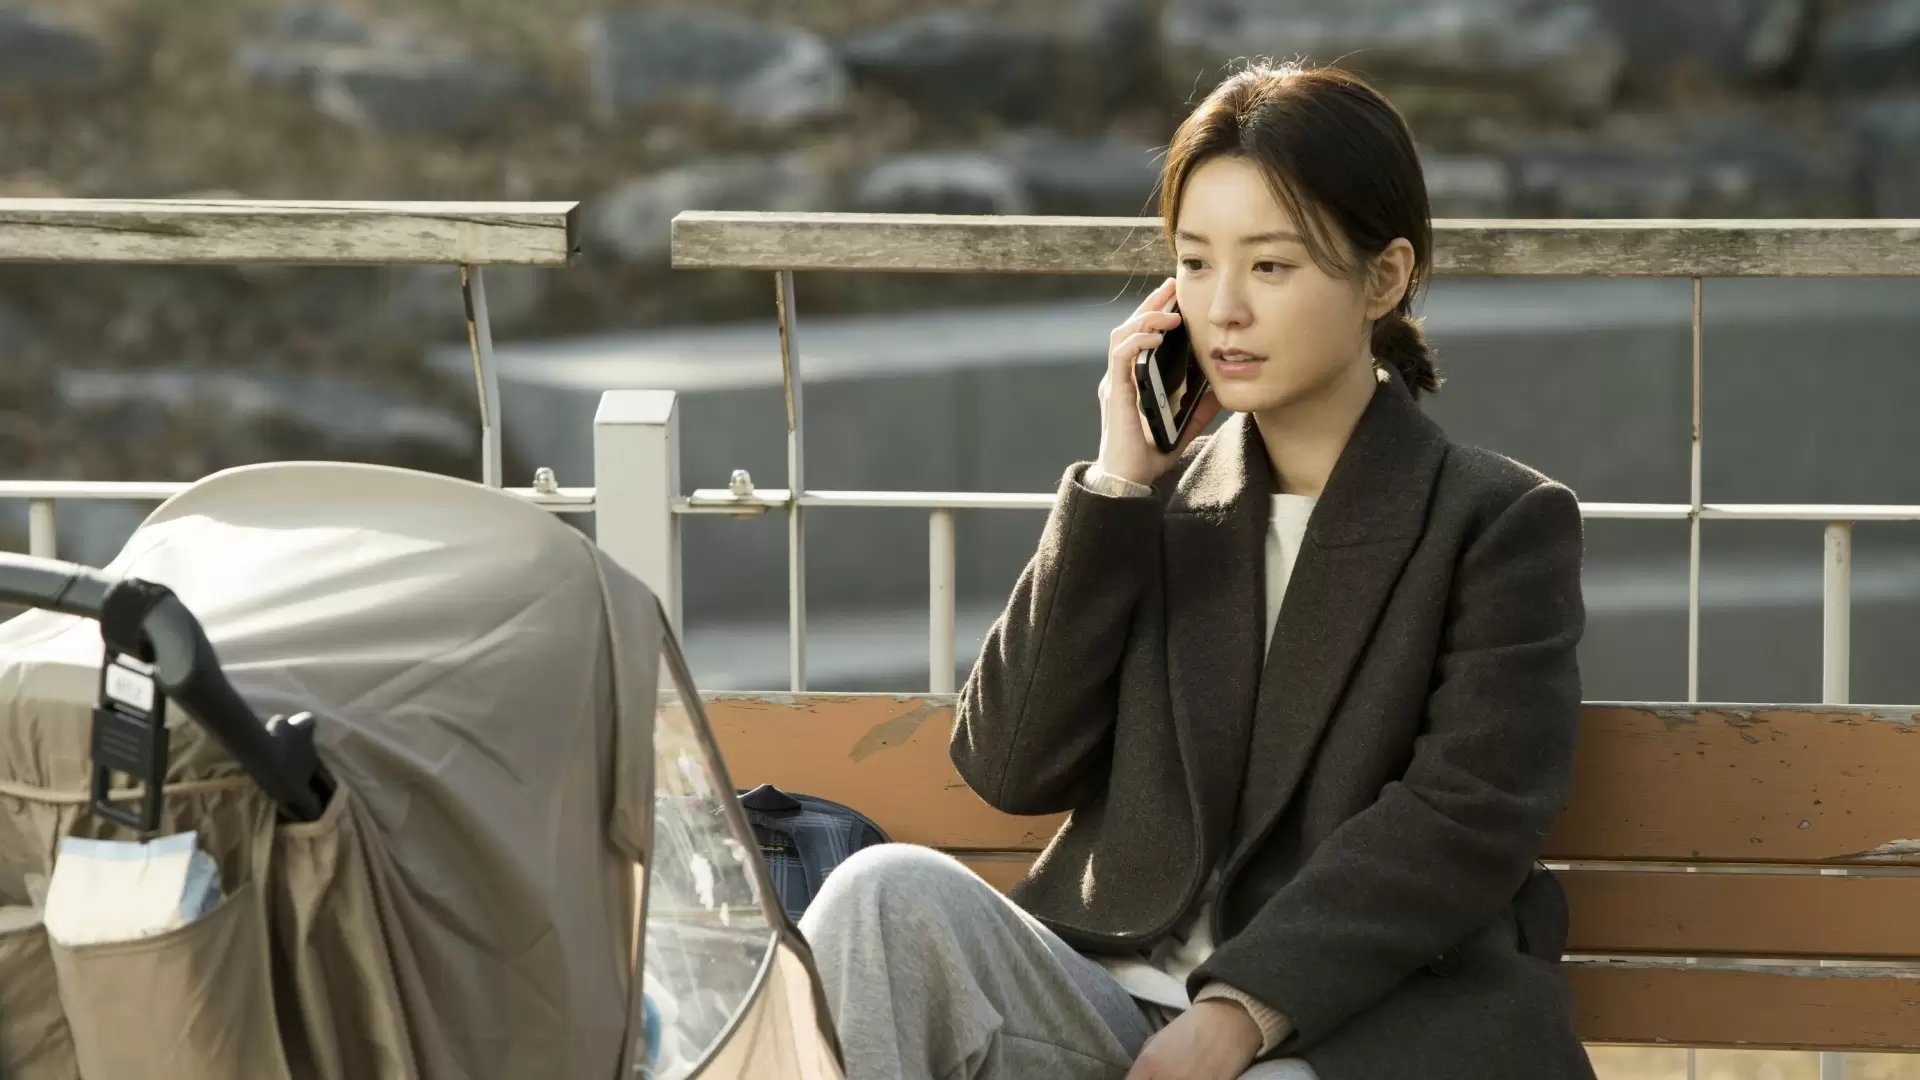 دانلود فیلم Kim Ji-young: Born 1982 2019 (کیم جیونگ: متولد ۱۹۸۲) با زیرنویس فارسی و تماشای آنلاین